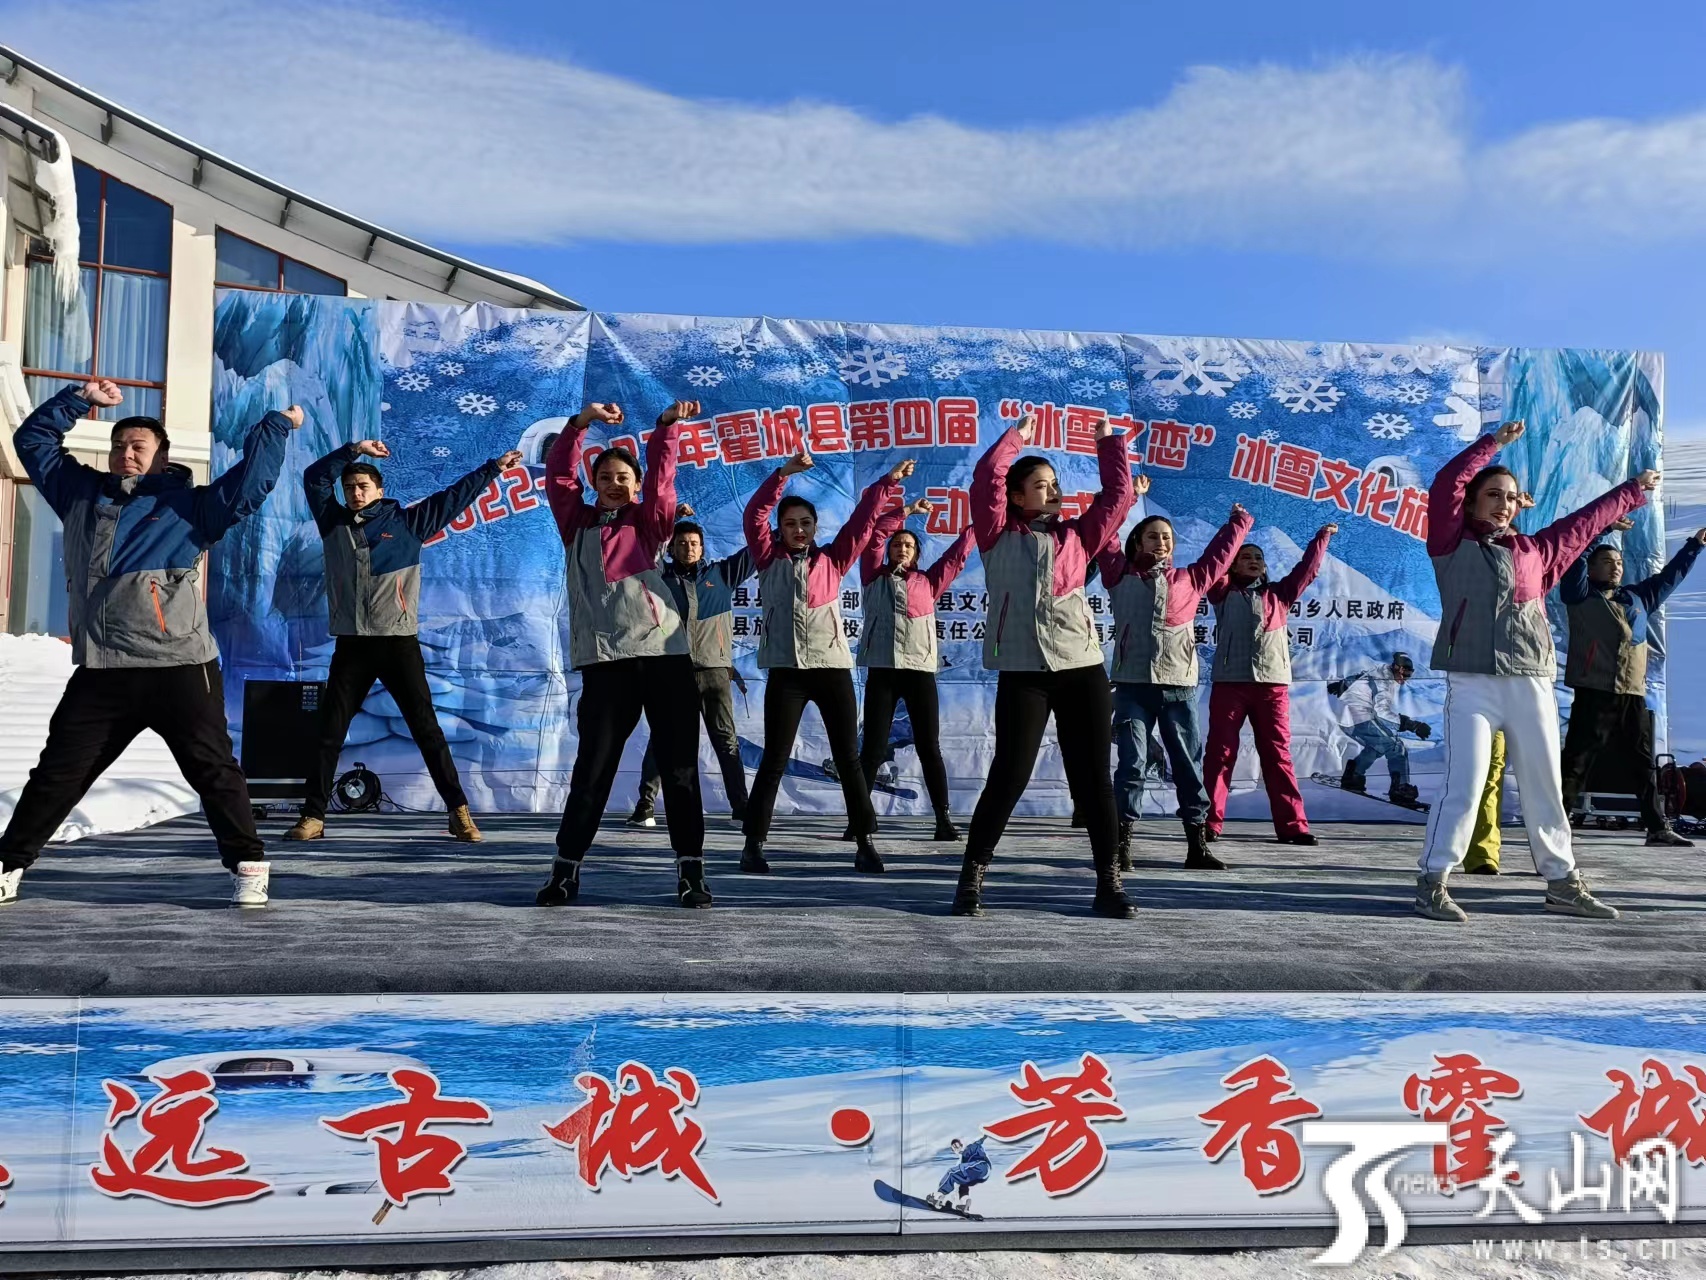 冰雪之美 尽在新疆·焐热冬季游⑦丨冰雪＋探险 这个冬天打开哈密的方式有点炫 -天山网 - 新疆新闻门户